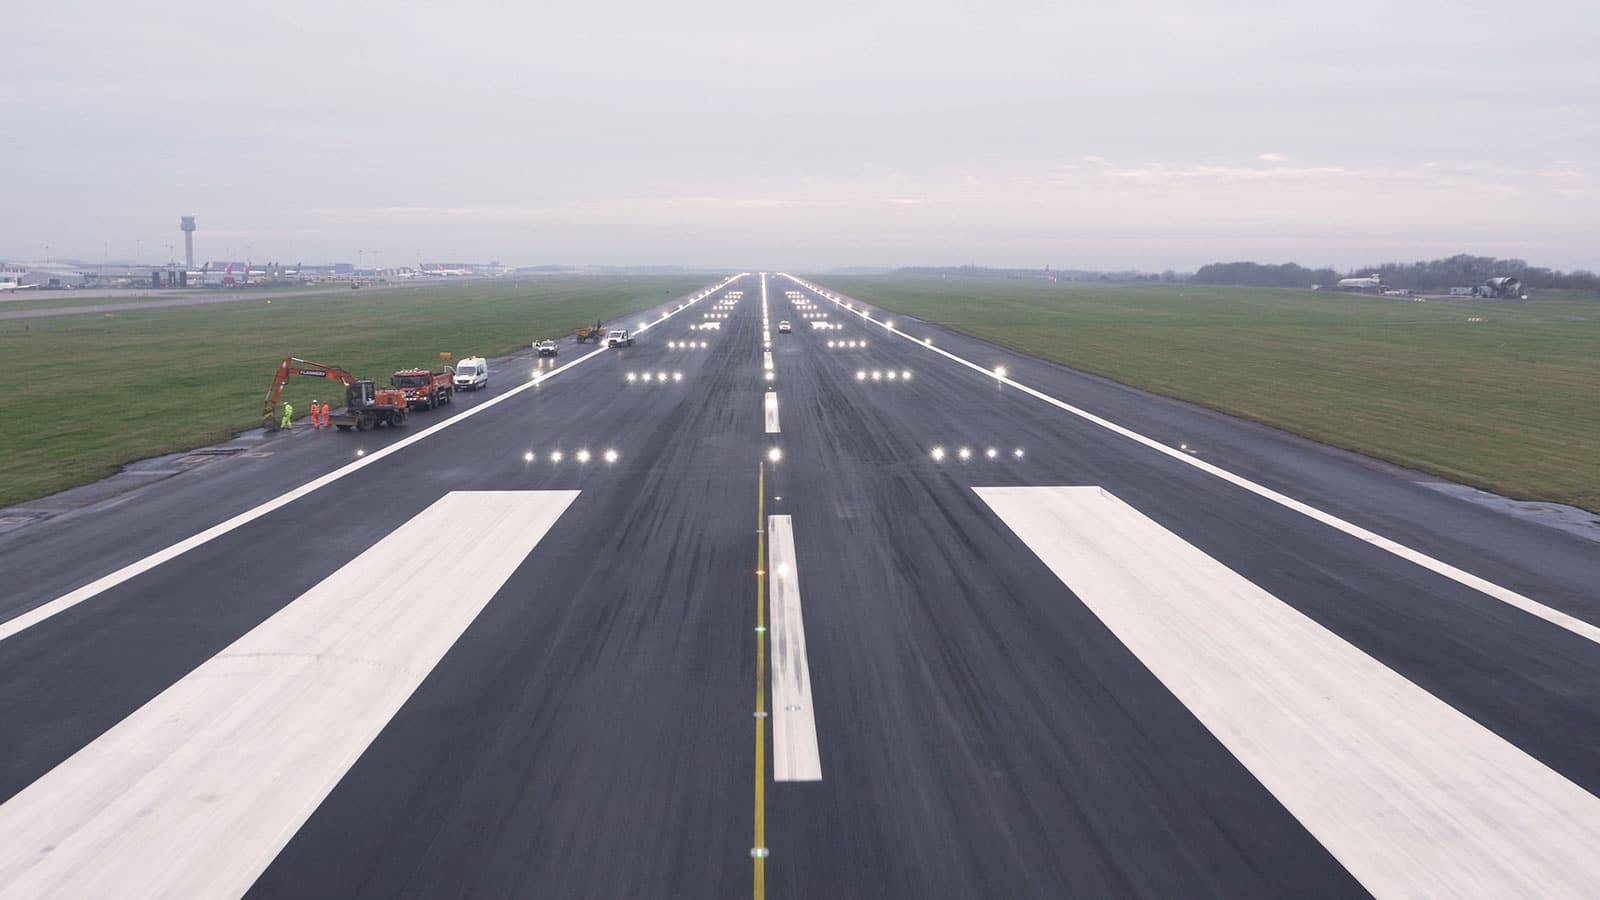 galliford try east midlands airport runway resurfacing